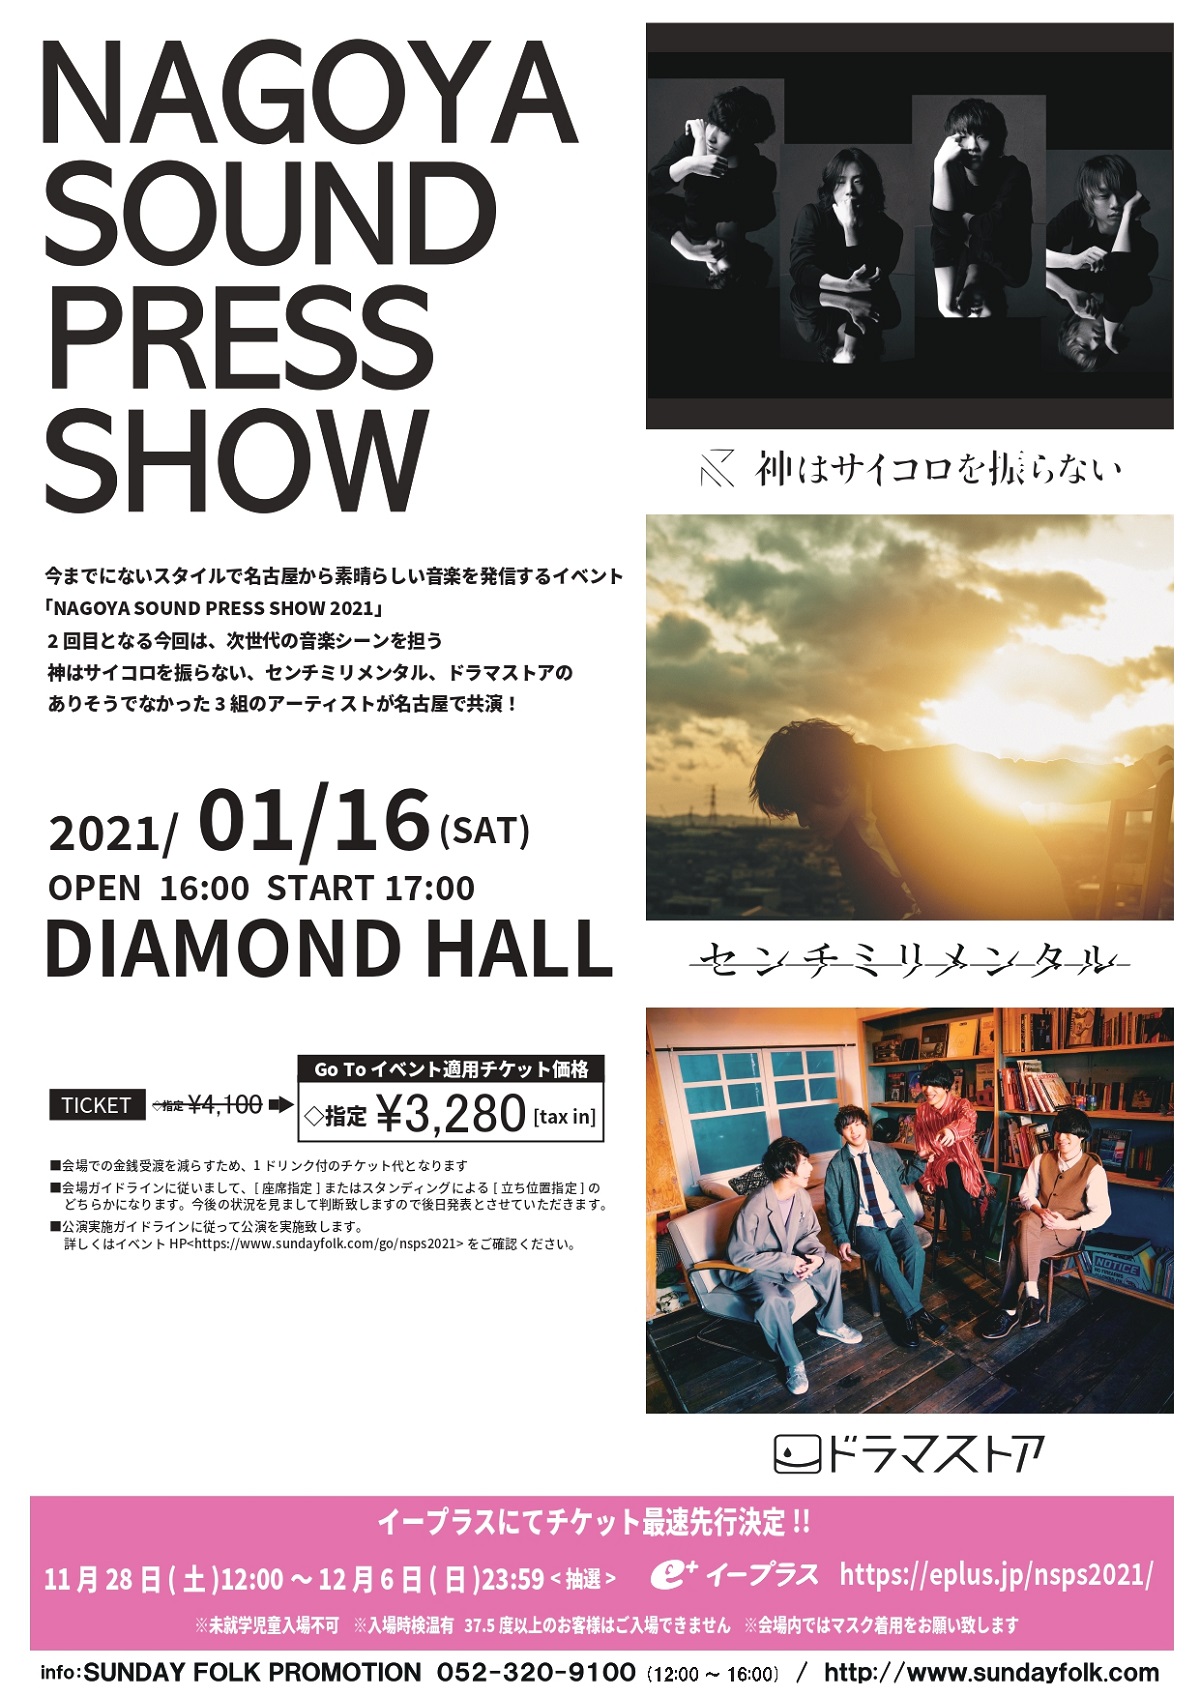 ドラマストア 神はサイコロを振らない センチミリメンタルが名古屋で共演 Nagoya Sound Press Show 21 1 26開催決定